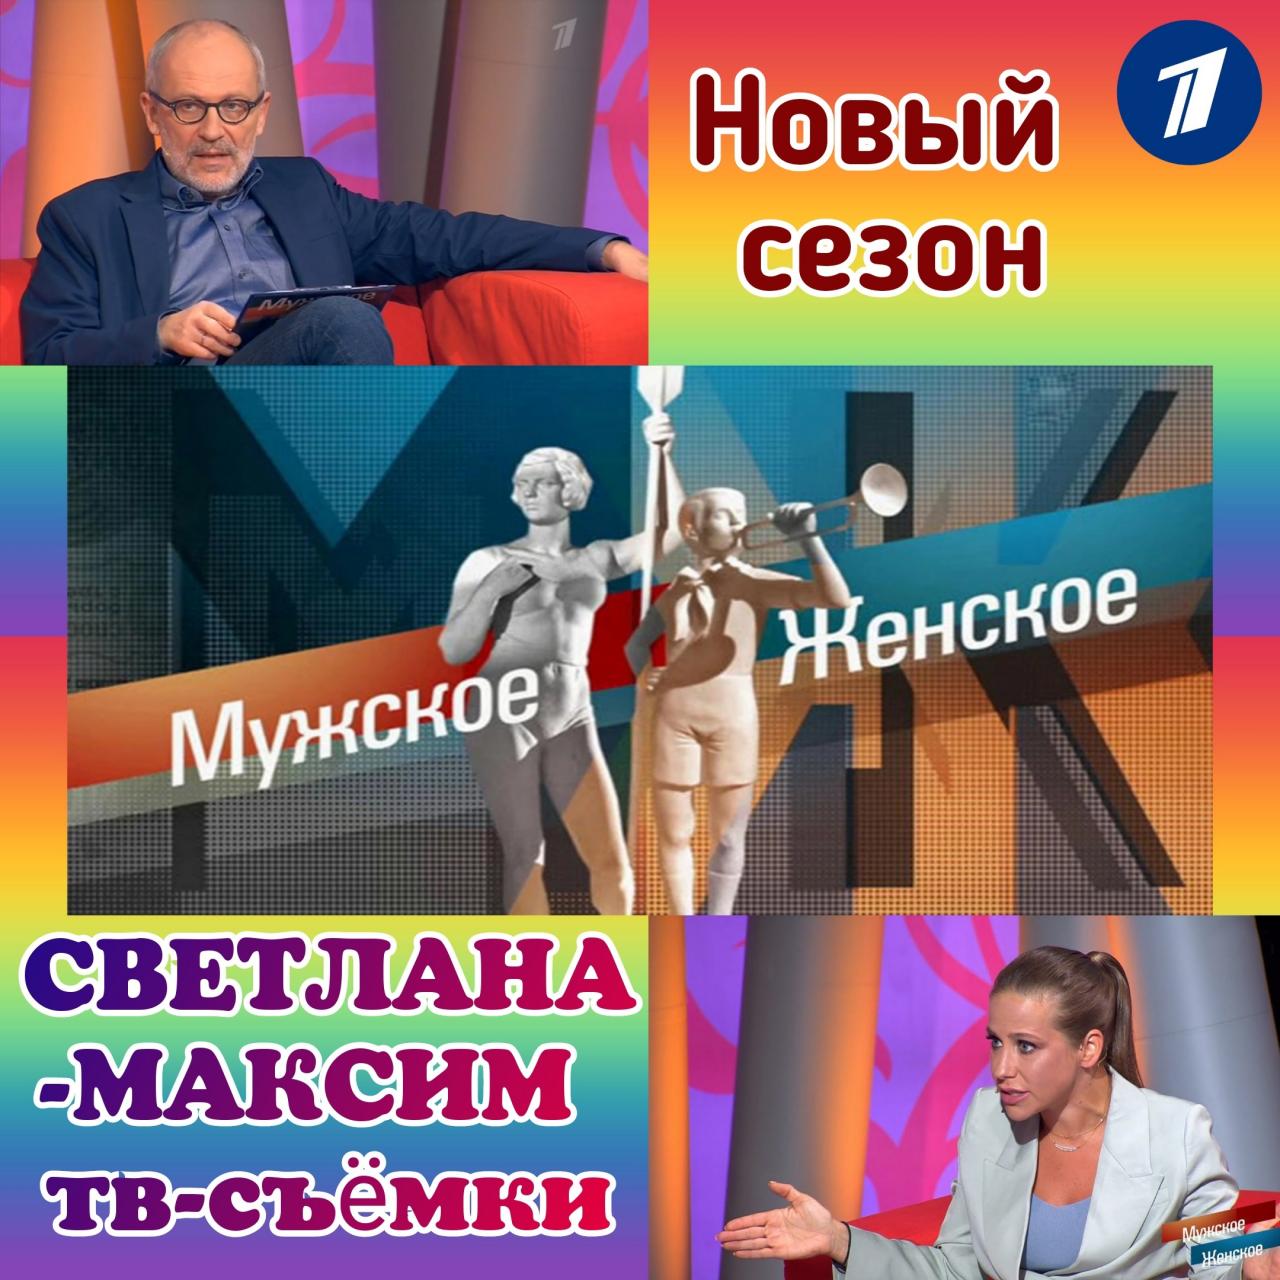 8 марта ток-шоу "МУЖСКОЕ/ЖЕНСКОЕ".